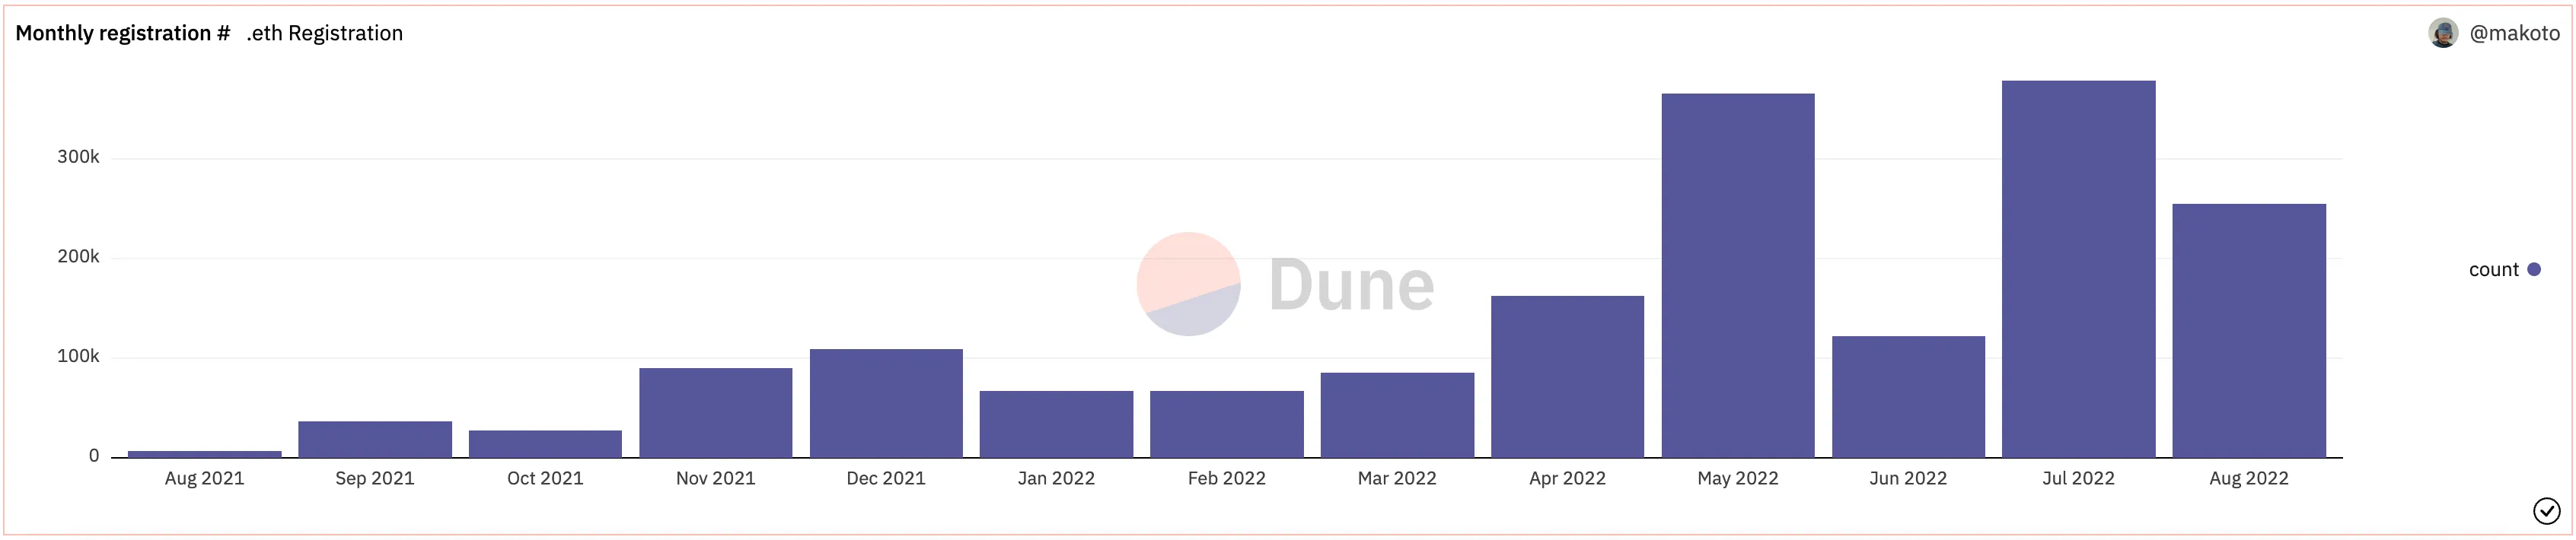 Registro mensual de ENS que indica un pico en los últimos 120 días. Fuente: Dune Analytics.